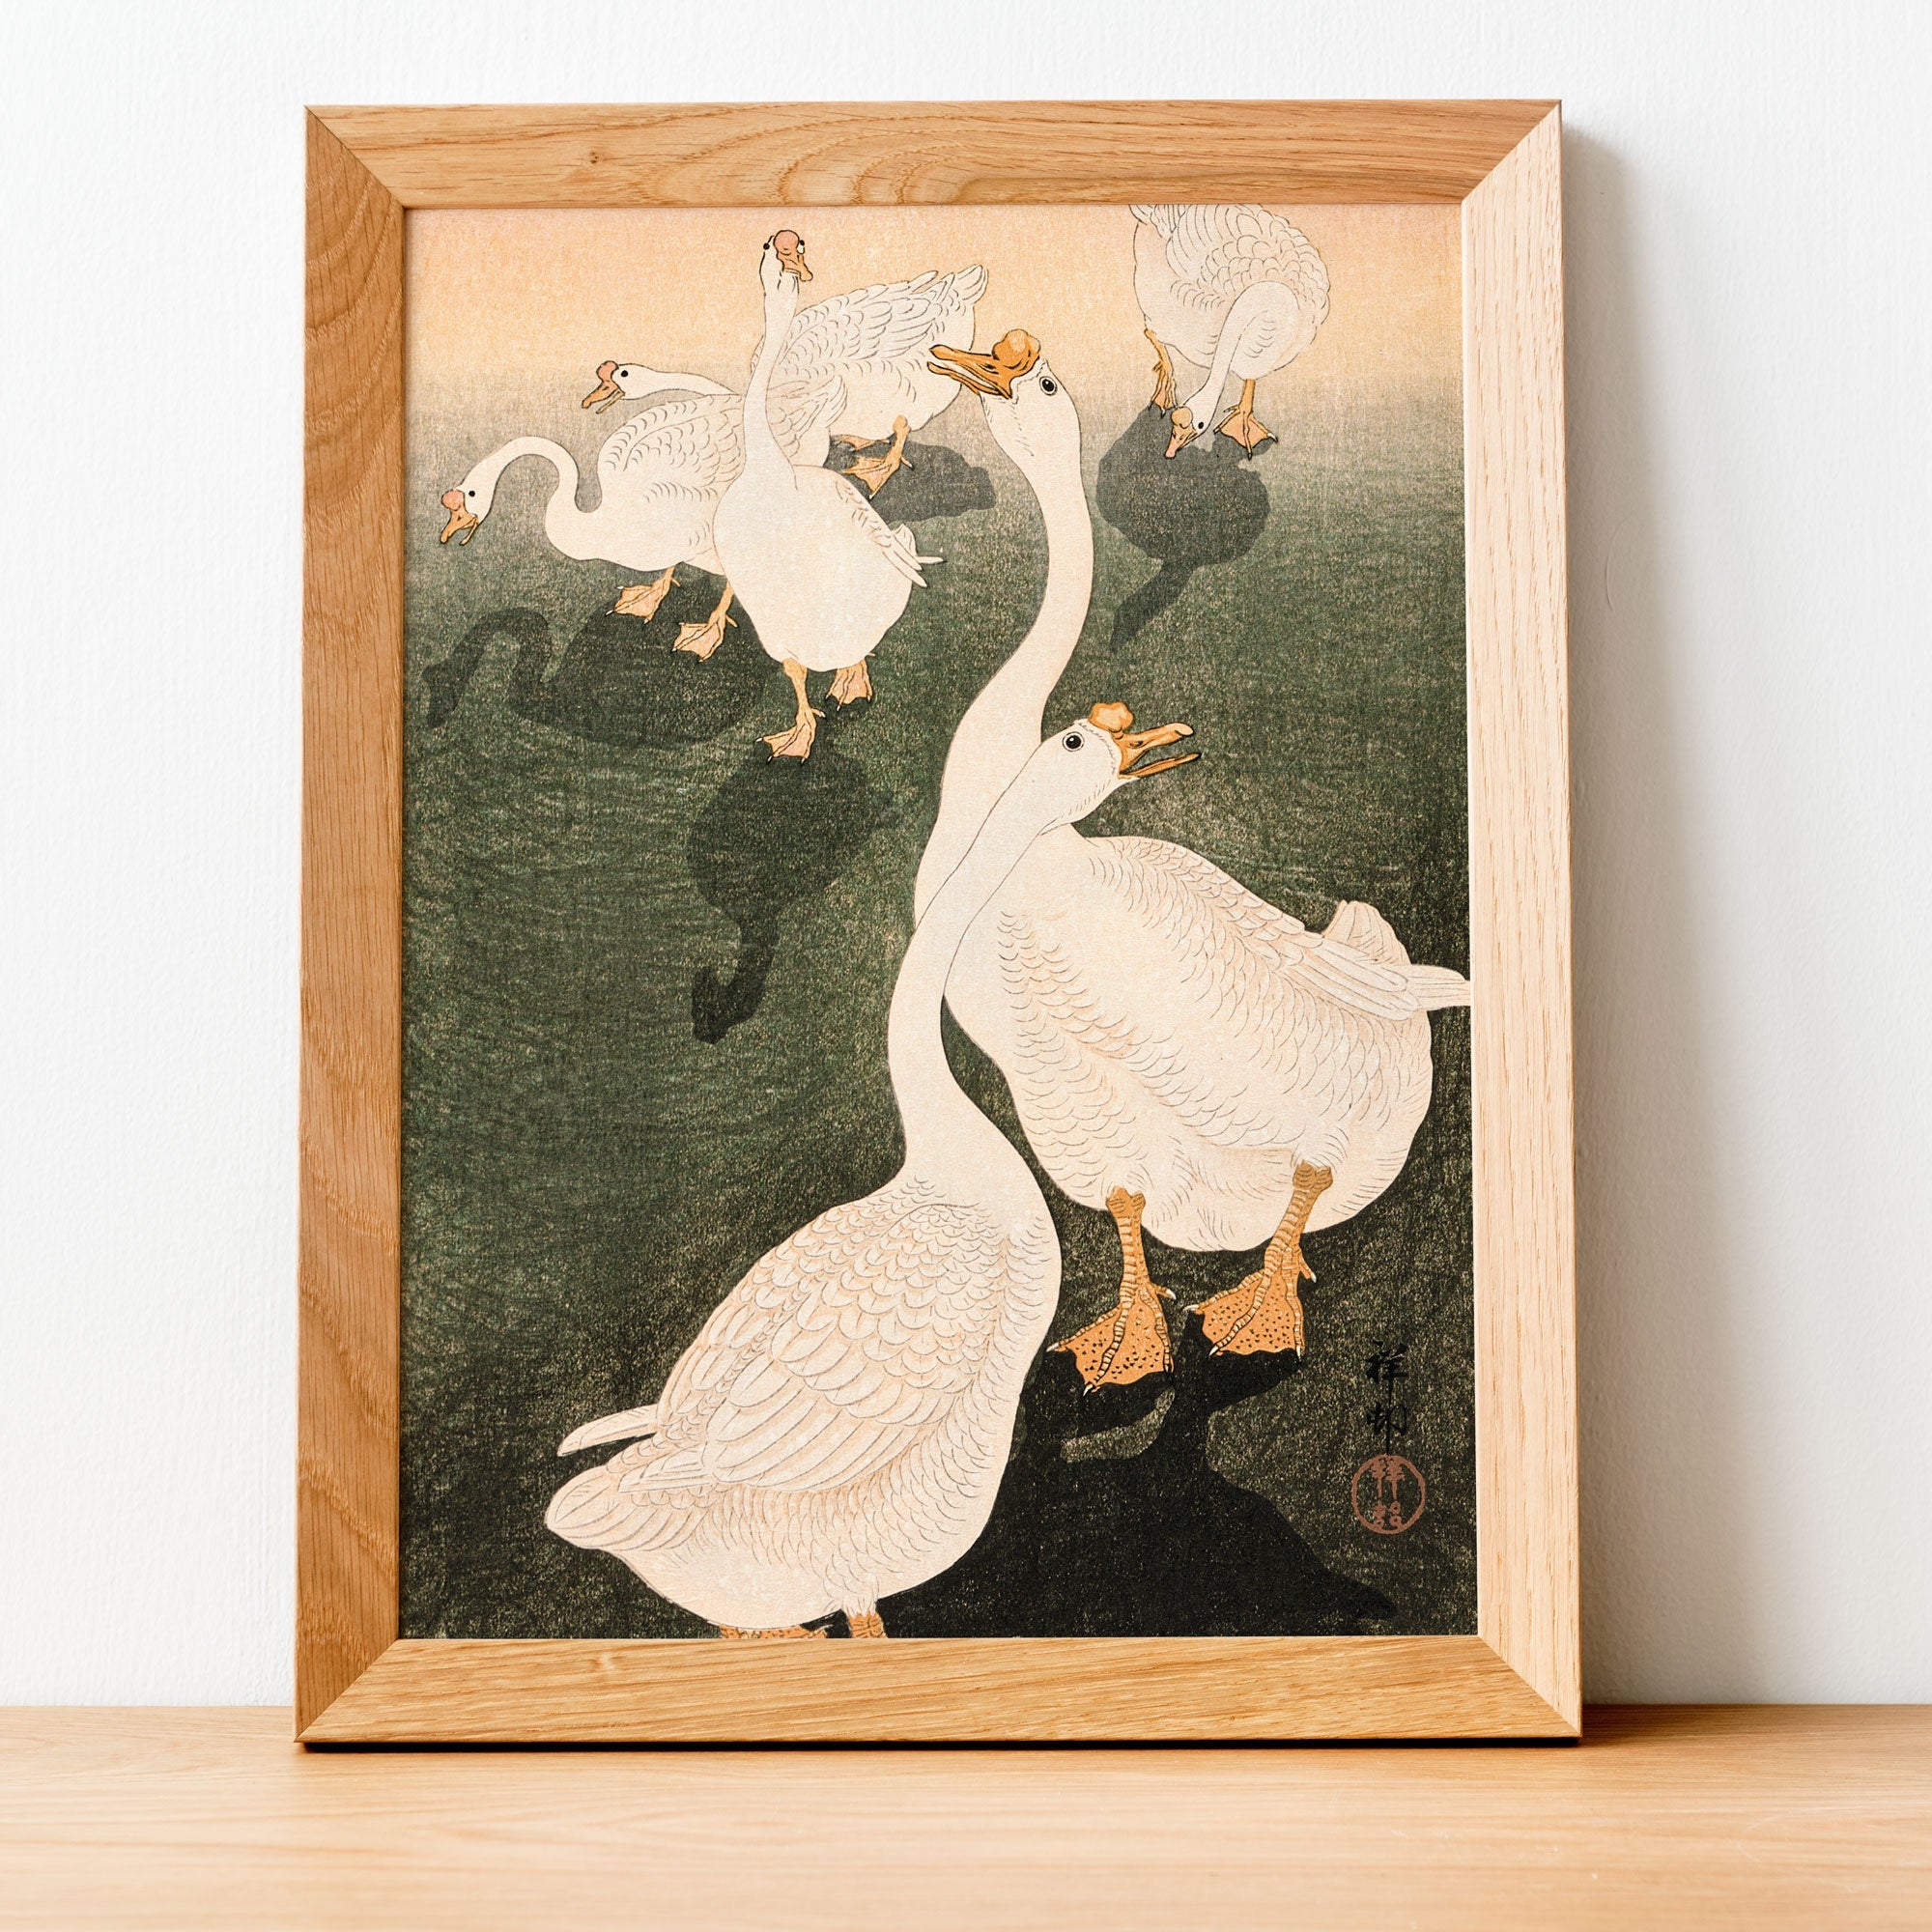 Japanese Geese Print - Hartsholme Prints